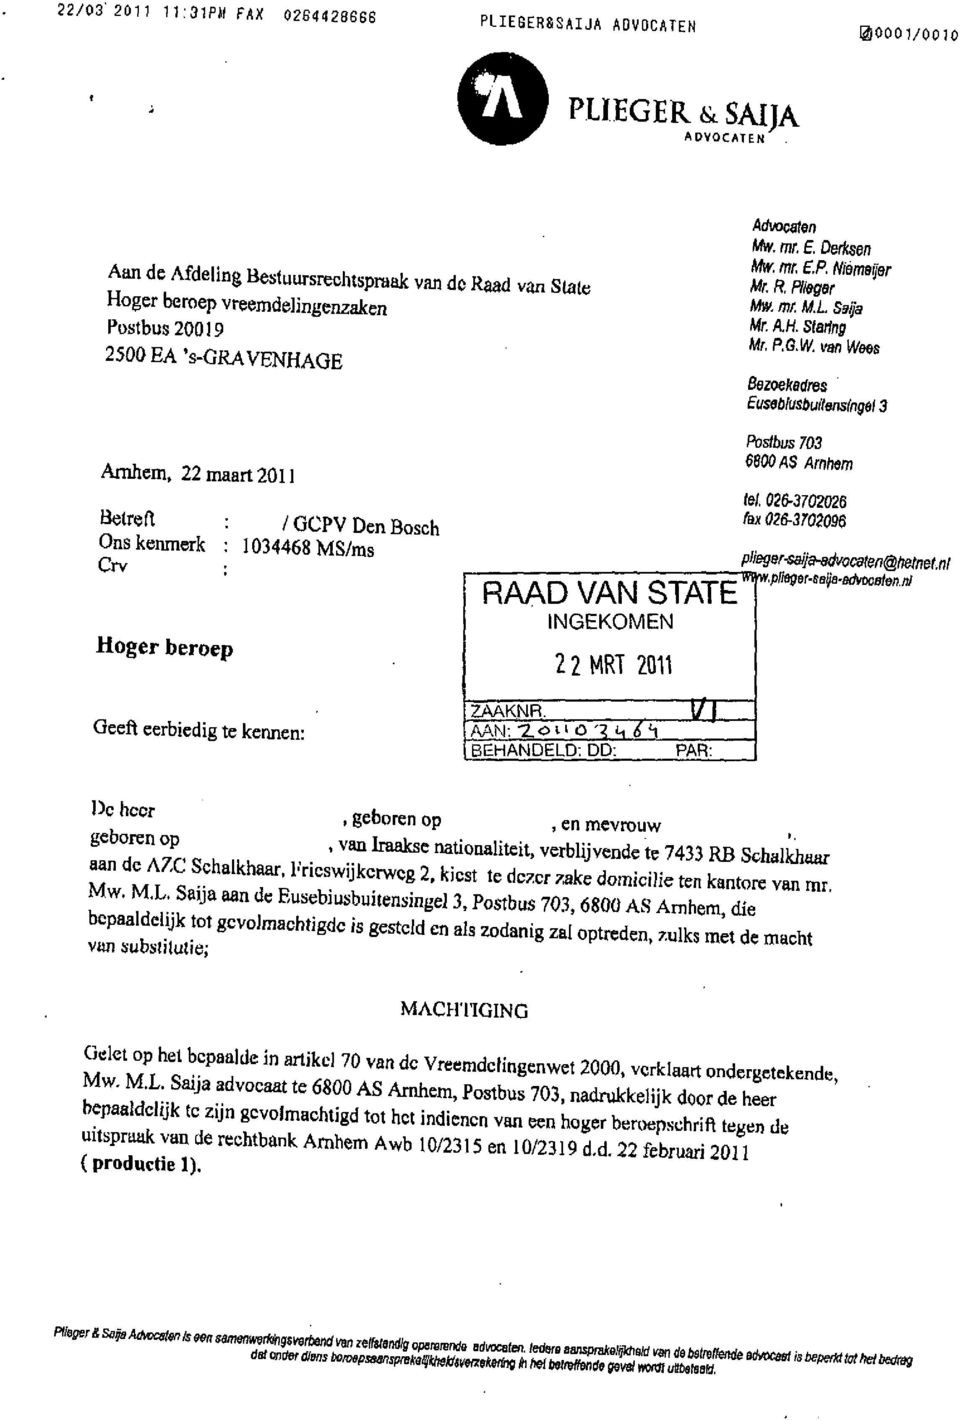 van IVees Bezoekadres Euseblu&buitensingêl 3 Arnhem, 22 maart 2011 Betreft Ons kenmerk Crv Hoger beroep Geeft eerbiedig te kennen: /GCPV Den Bosch 1034468 MS/ms RAAD VAN STATE ZAAKNR.